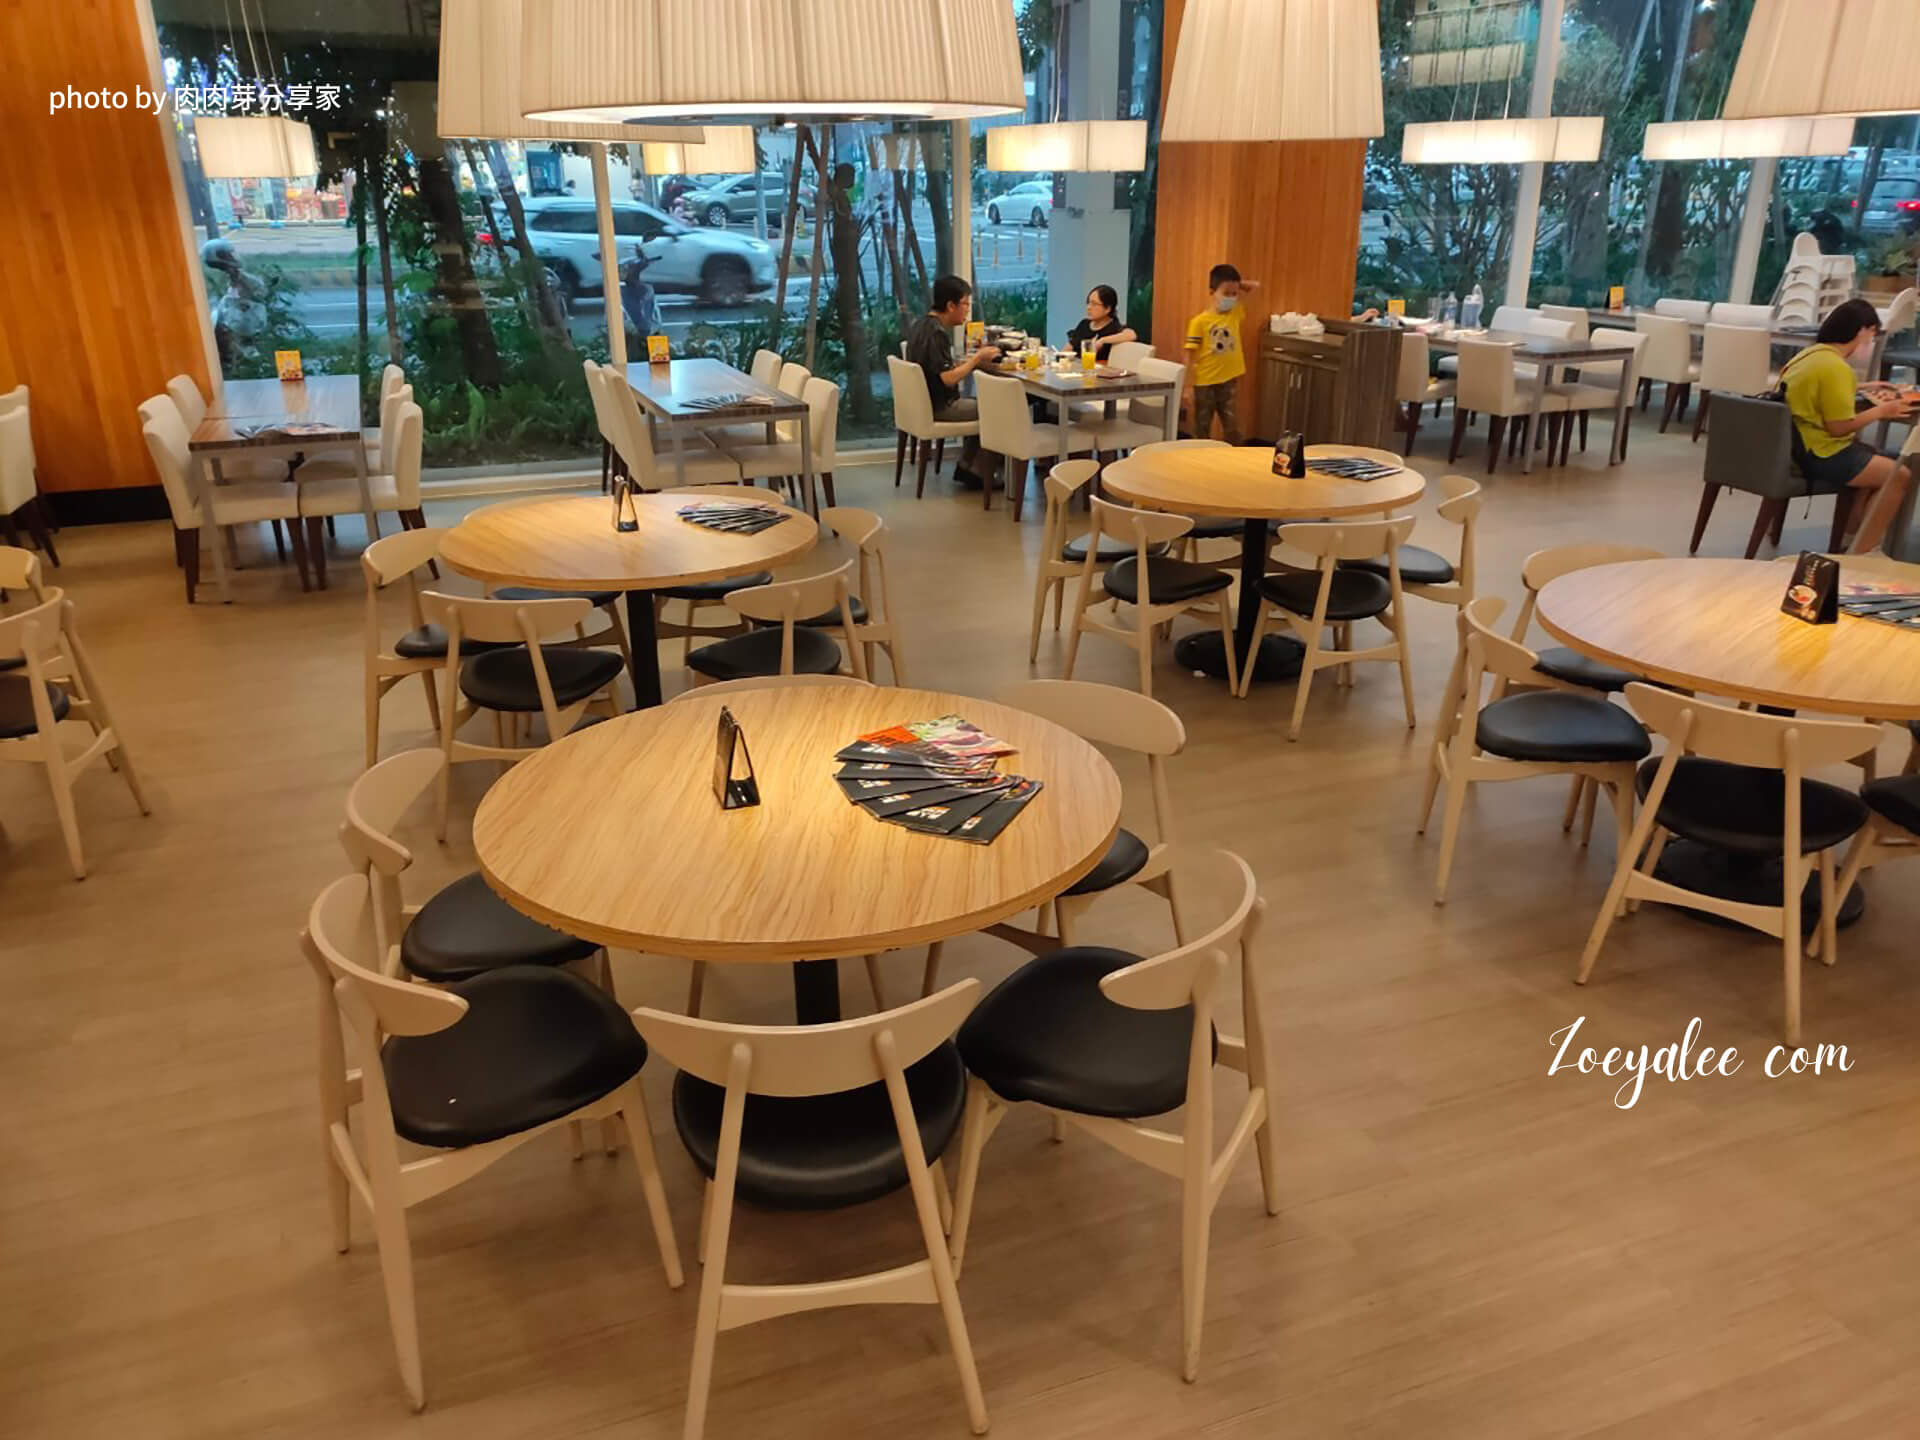 新竹竹北美食-異人館咖啡部屋靠圓桌座位區 肉肉芽分享家拍攝.